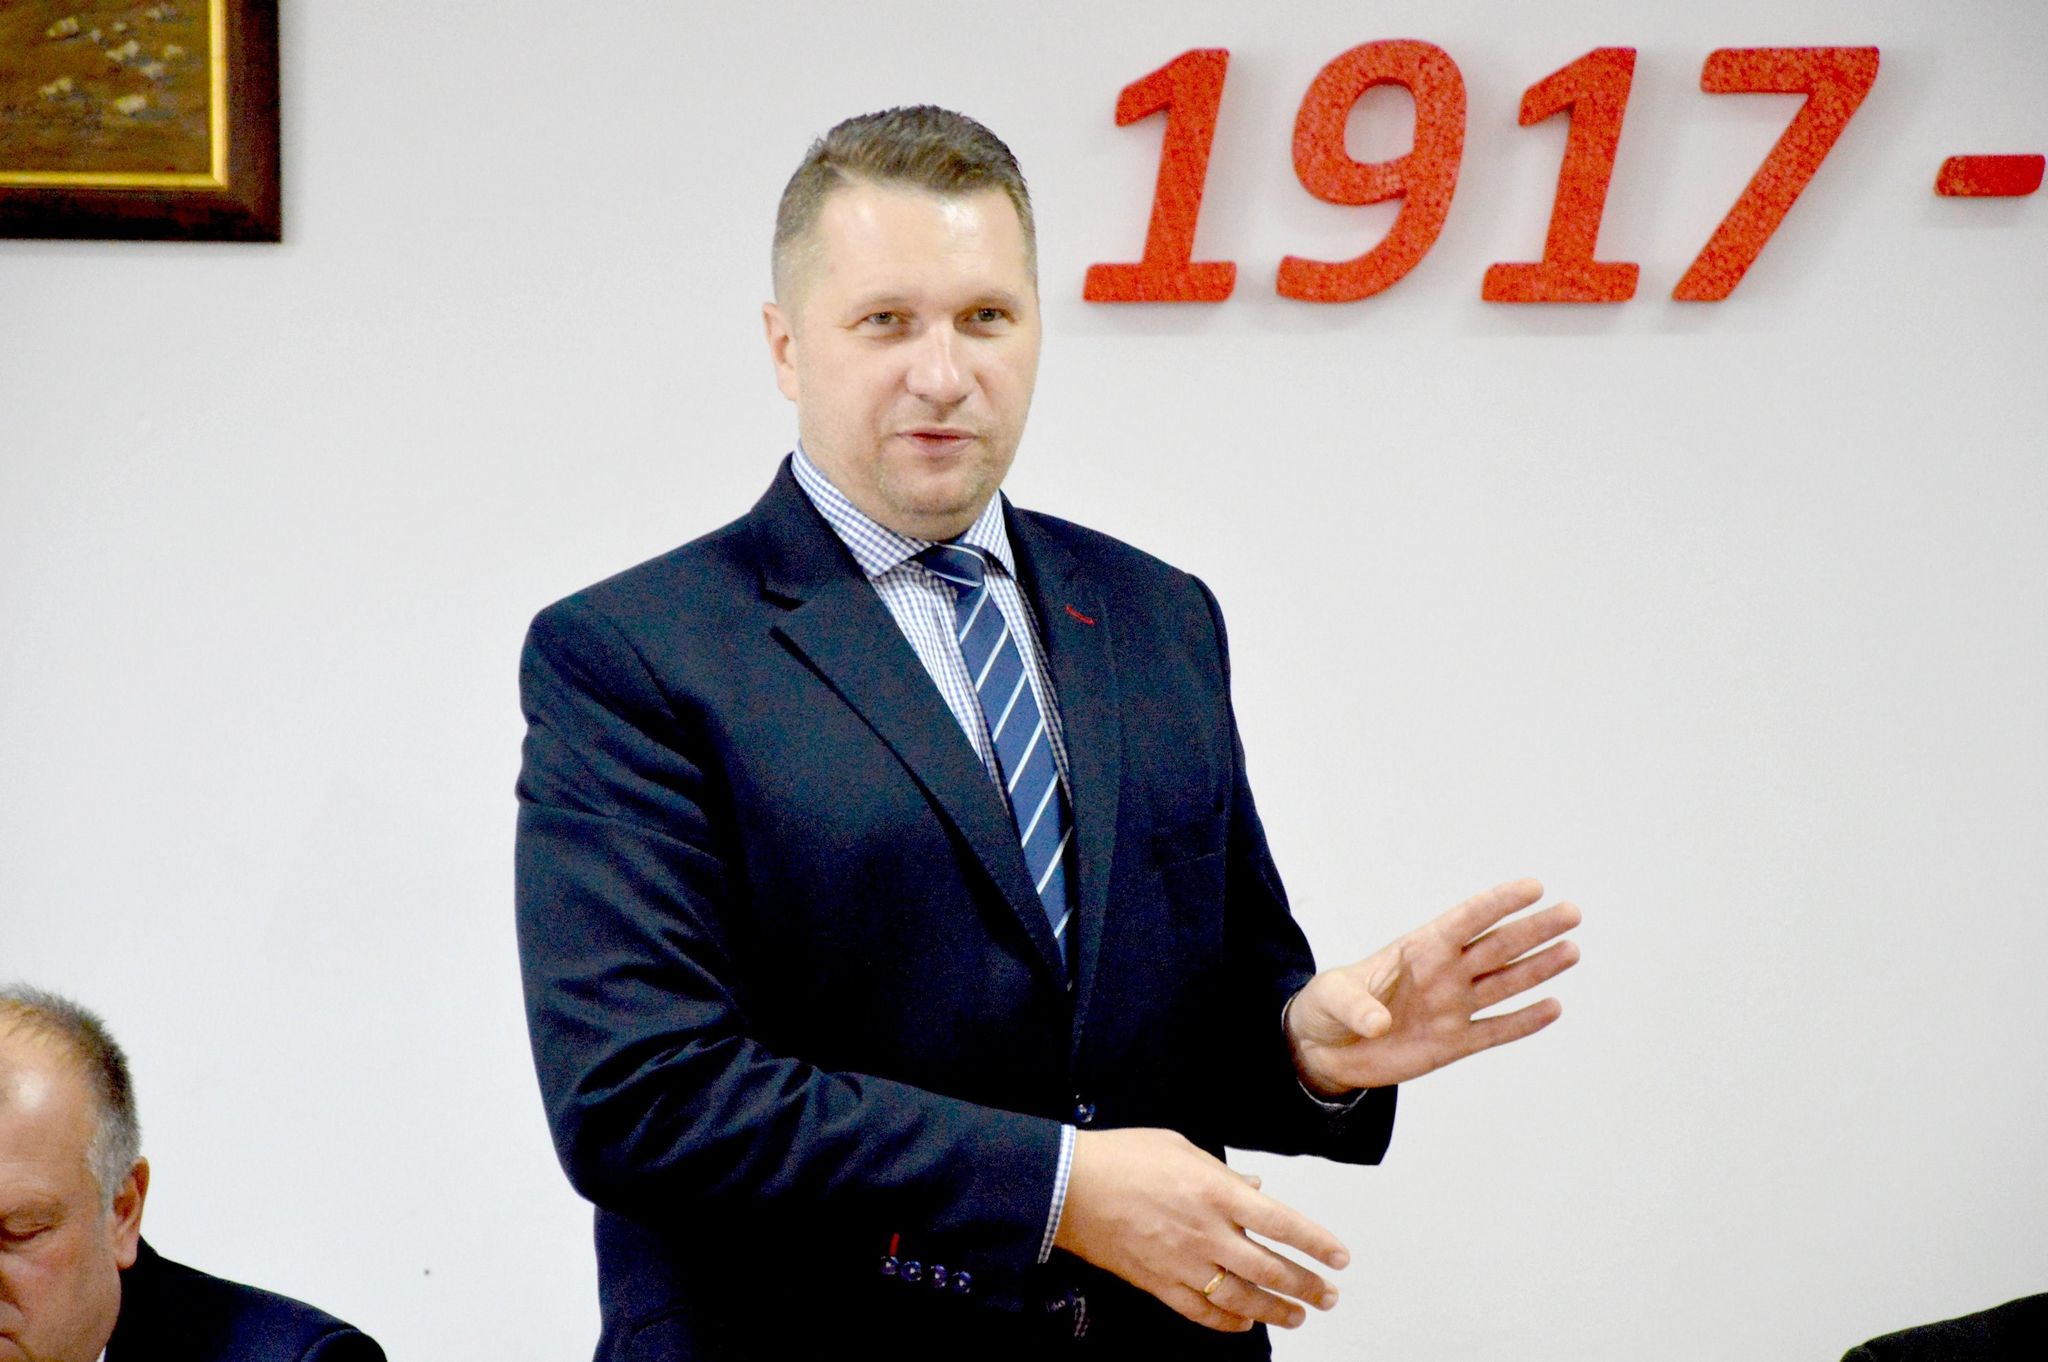 Kraj: Minister Czarnek opowiedział o nowym przedmiocie w szkole. Opozycja krytykuje - Zdjęcie główne